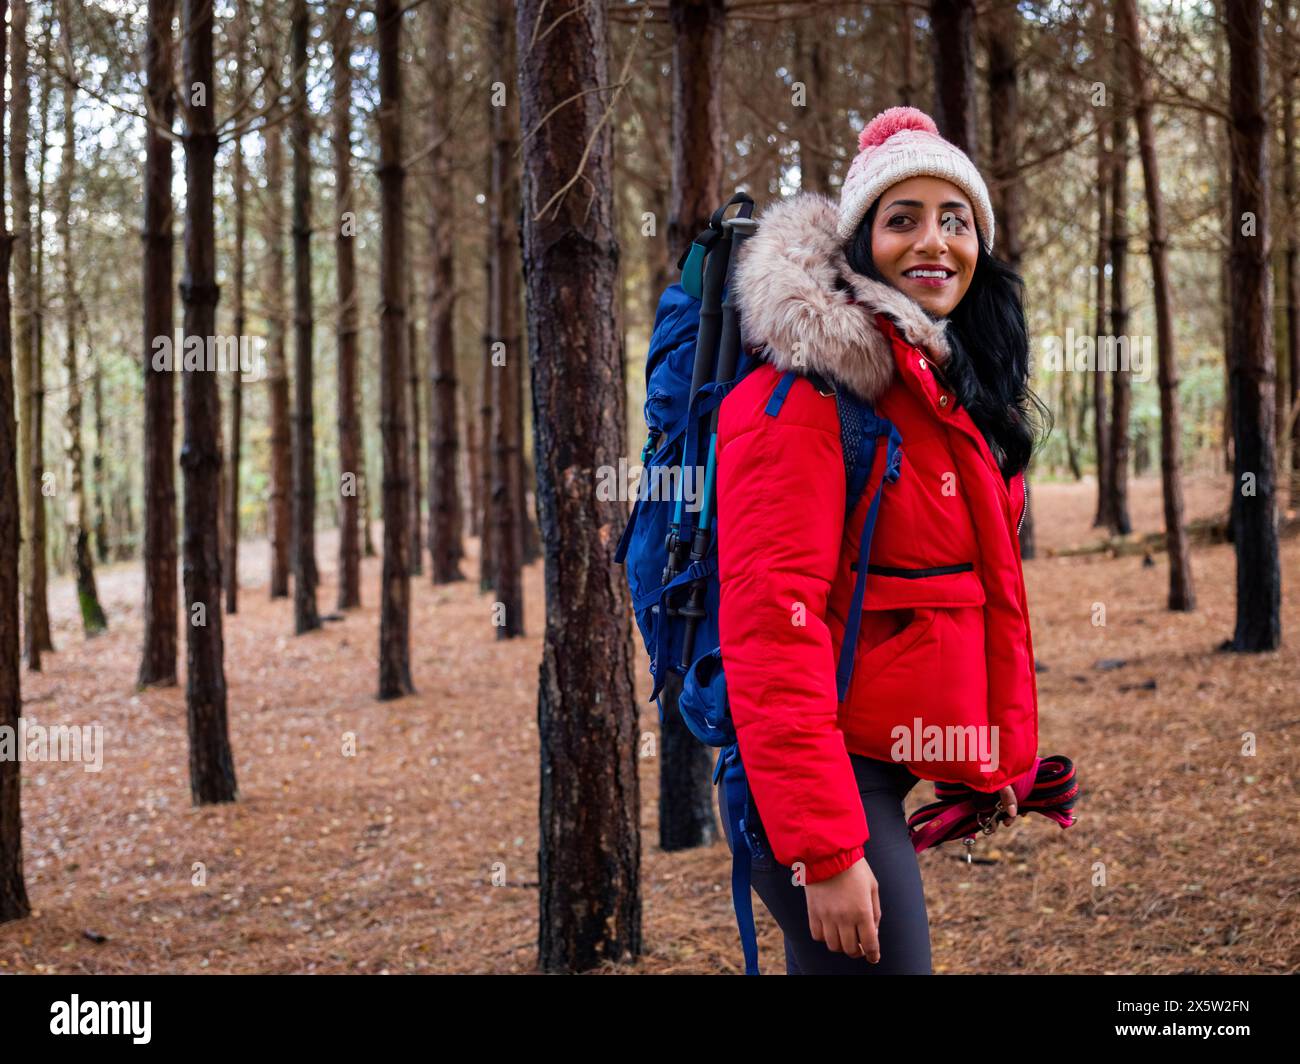 Randonneur femme en randonnée dans la forêt Banque D'Images